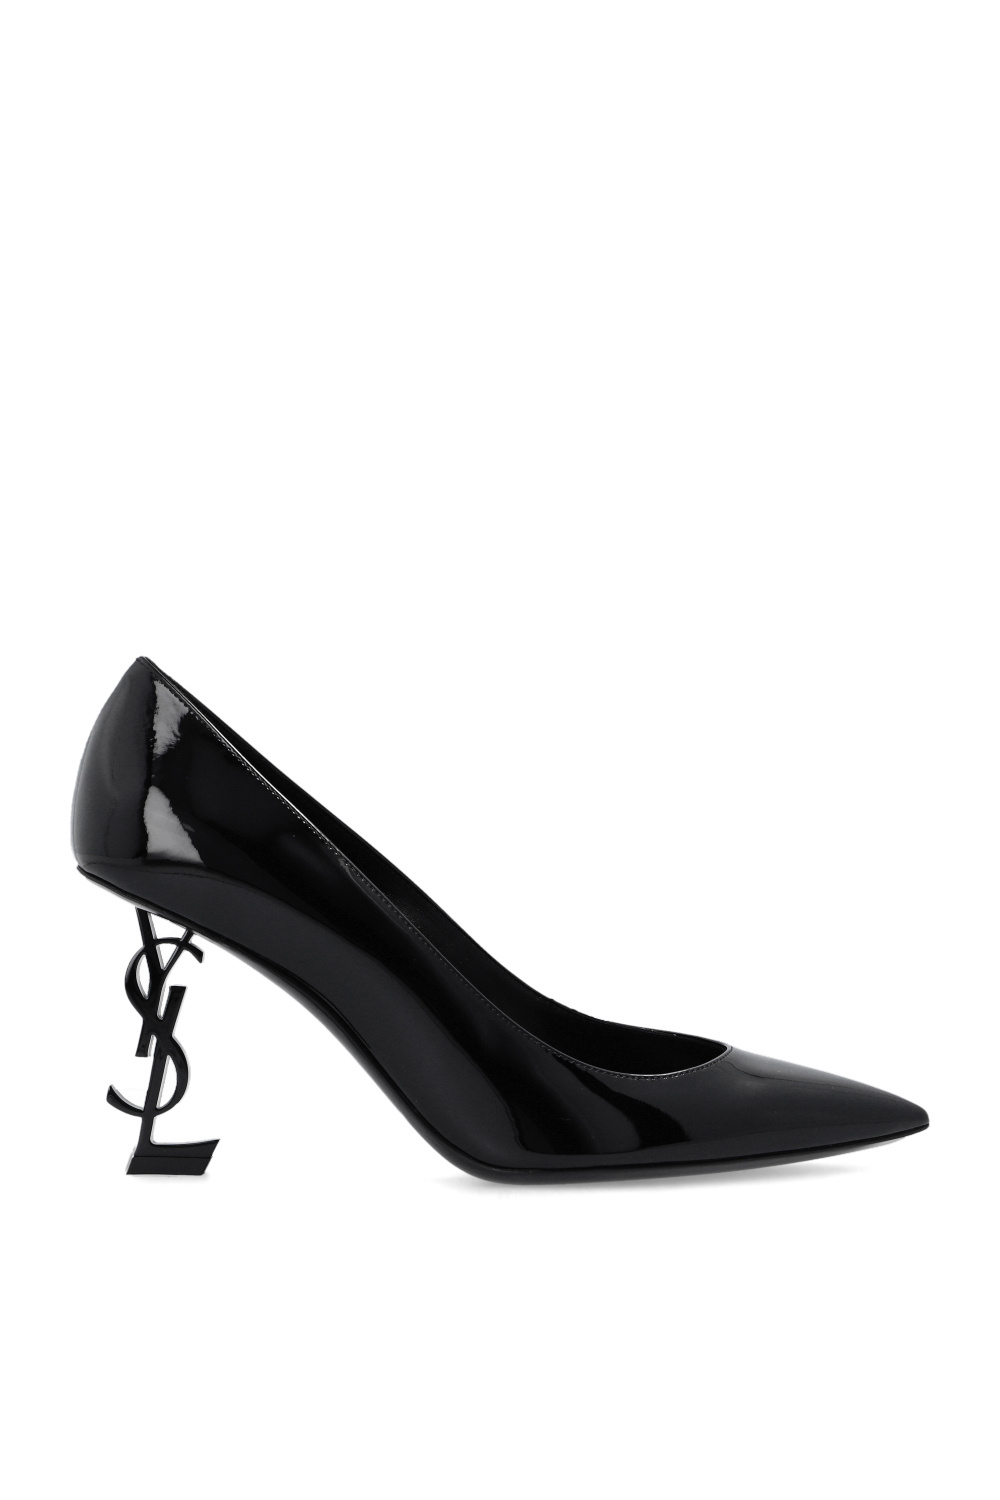 Saint Laurent Shoes for Women